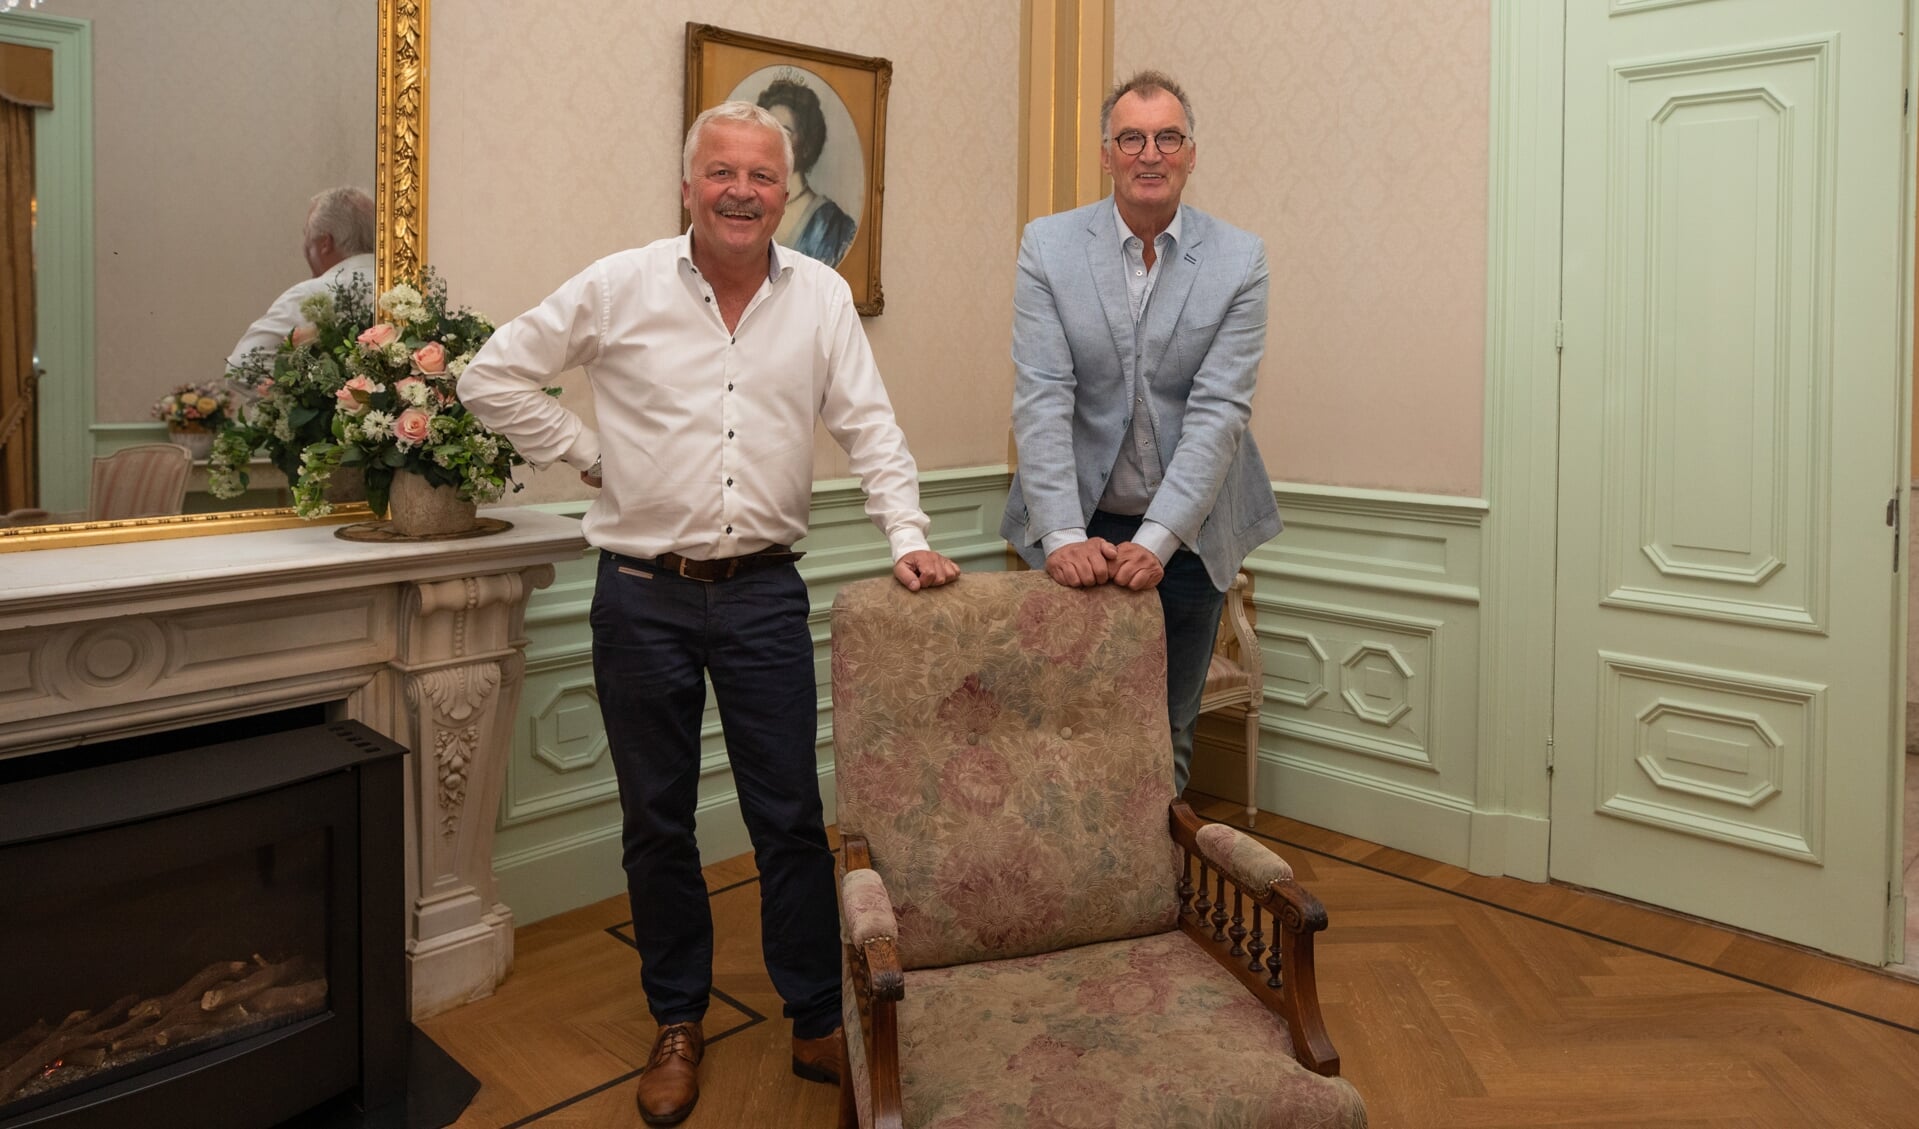 Vanmiddag werd de Koninklijke wachtkamer verrijkt met een oude stoel met historie.
Ruud Bouwman pakte samen met de zoon van de schenker de stoel op dinsdagmiddag uit.